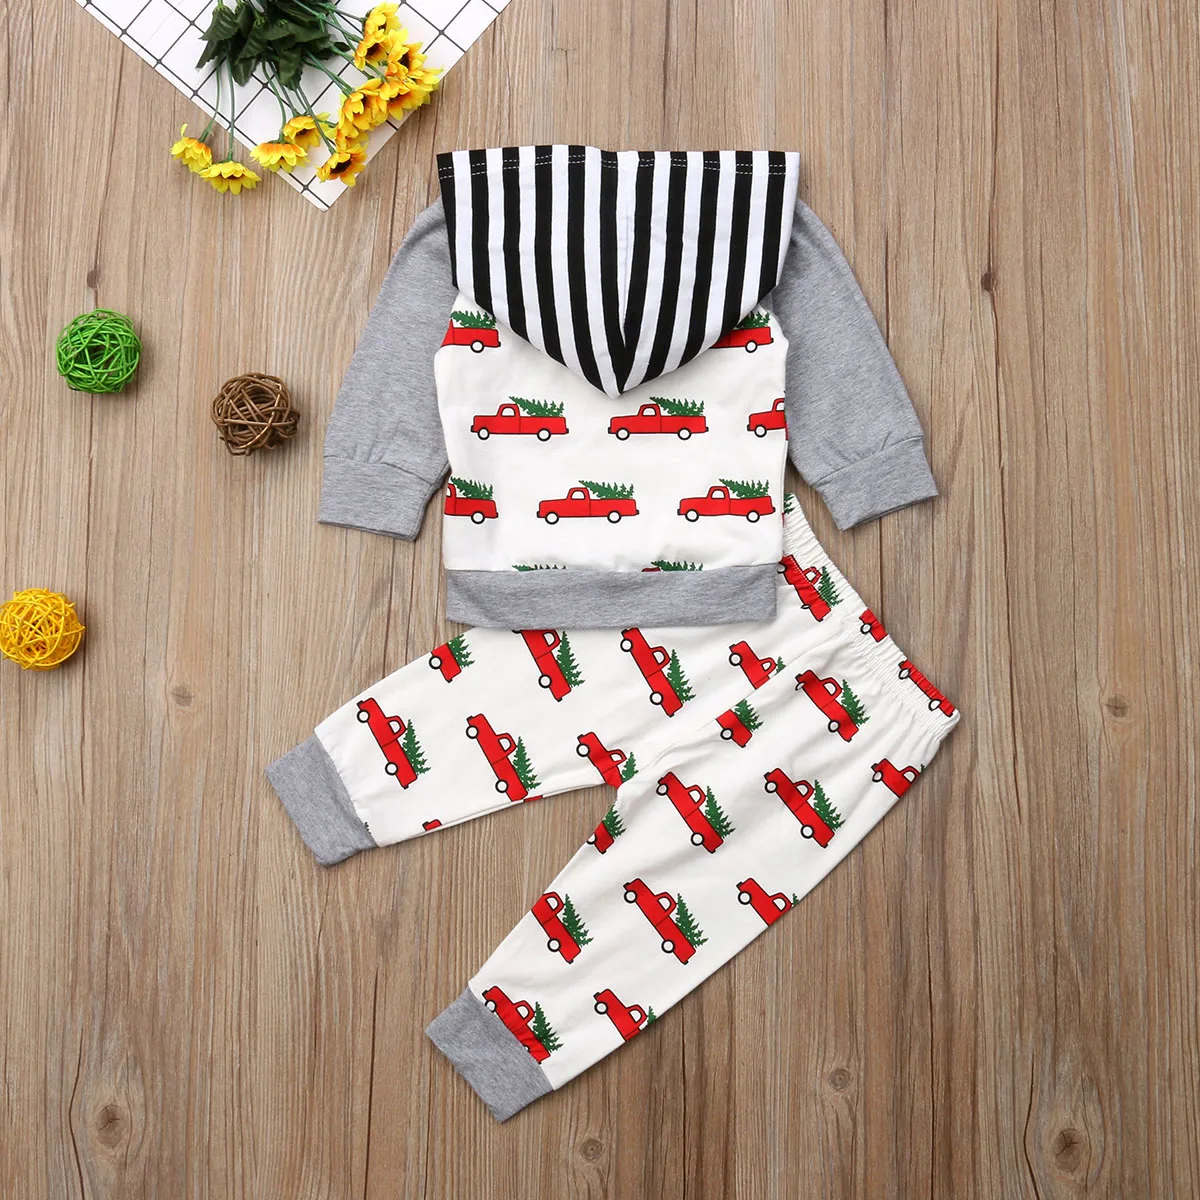 Г., бренд Multitrust, топы с капюшоном и рисунком рождественской елки для новорожденных мальчиков и девочек, штаны осенняя одежда с машинками